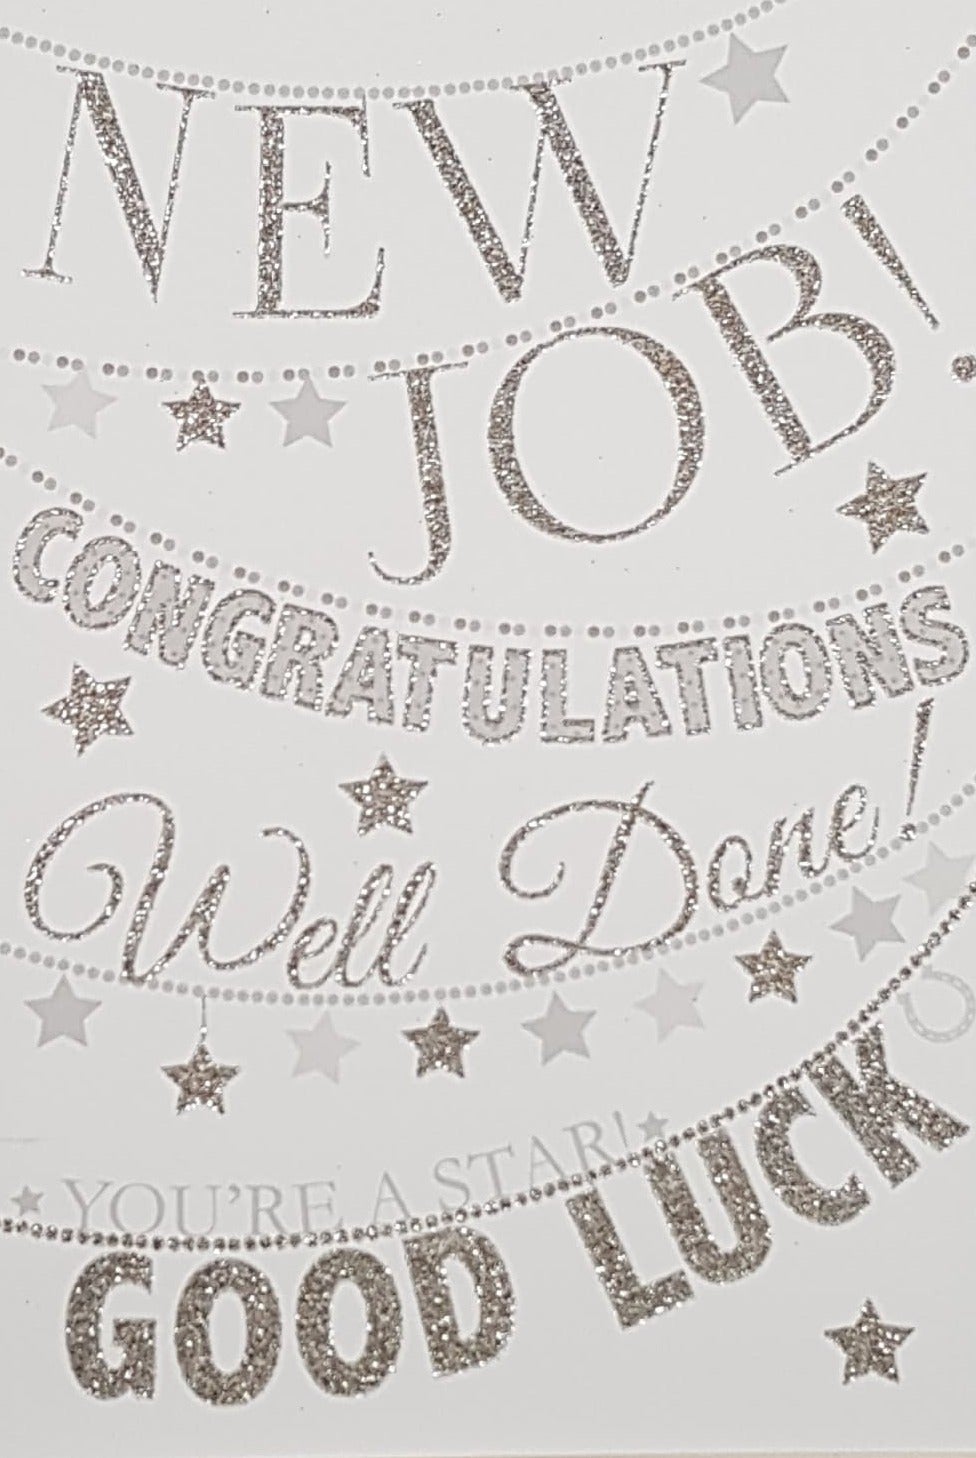 Congratulations Card - New Job / A Sparkly Font